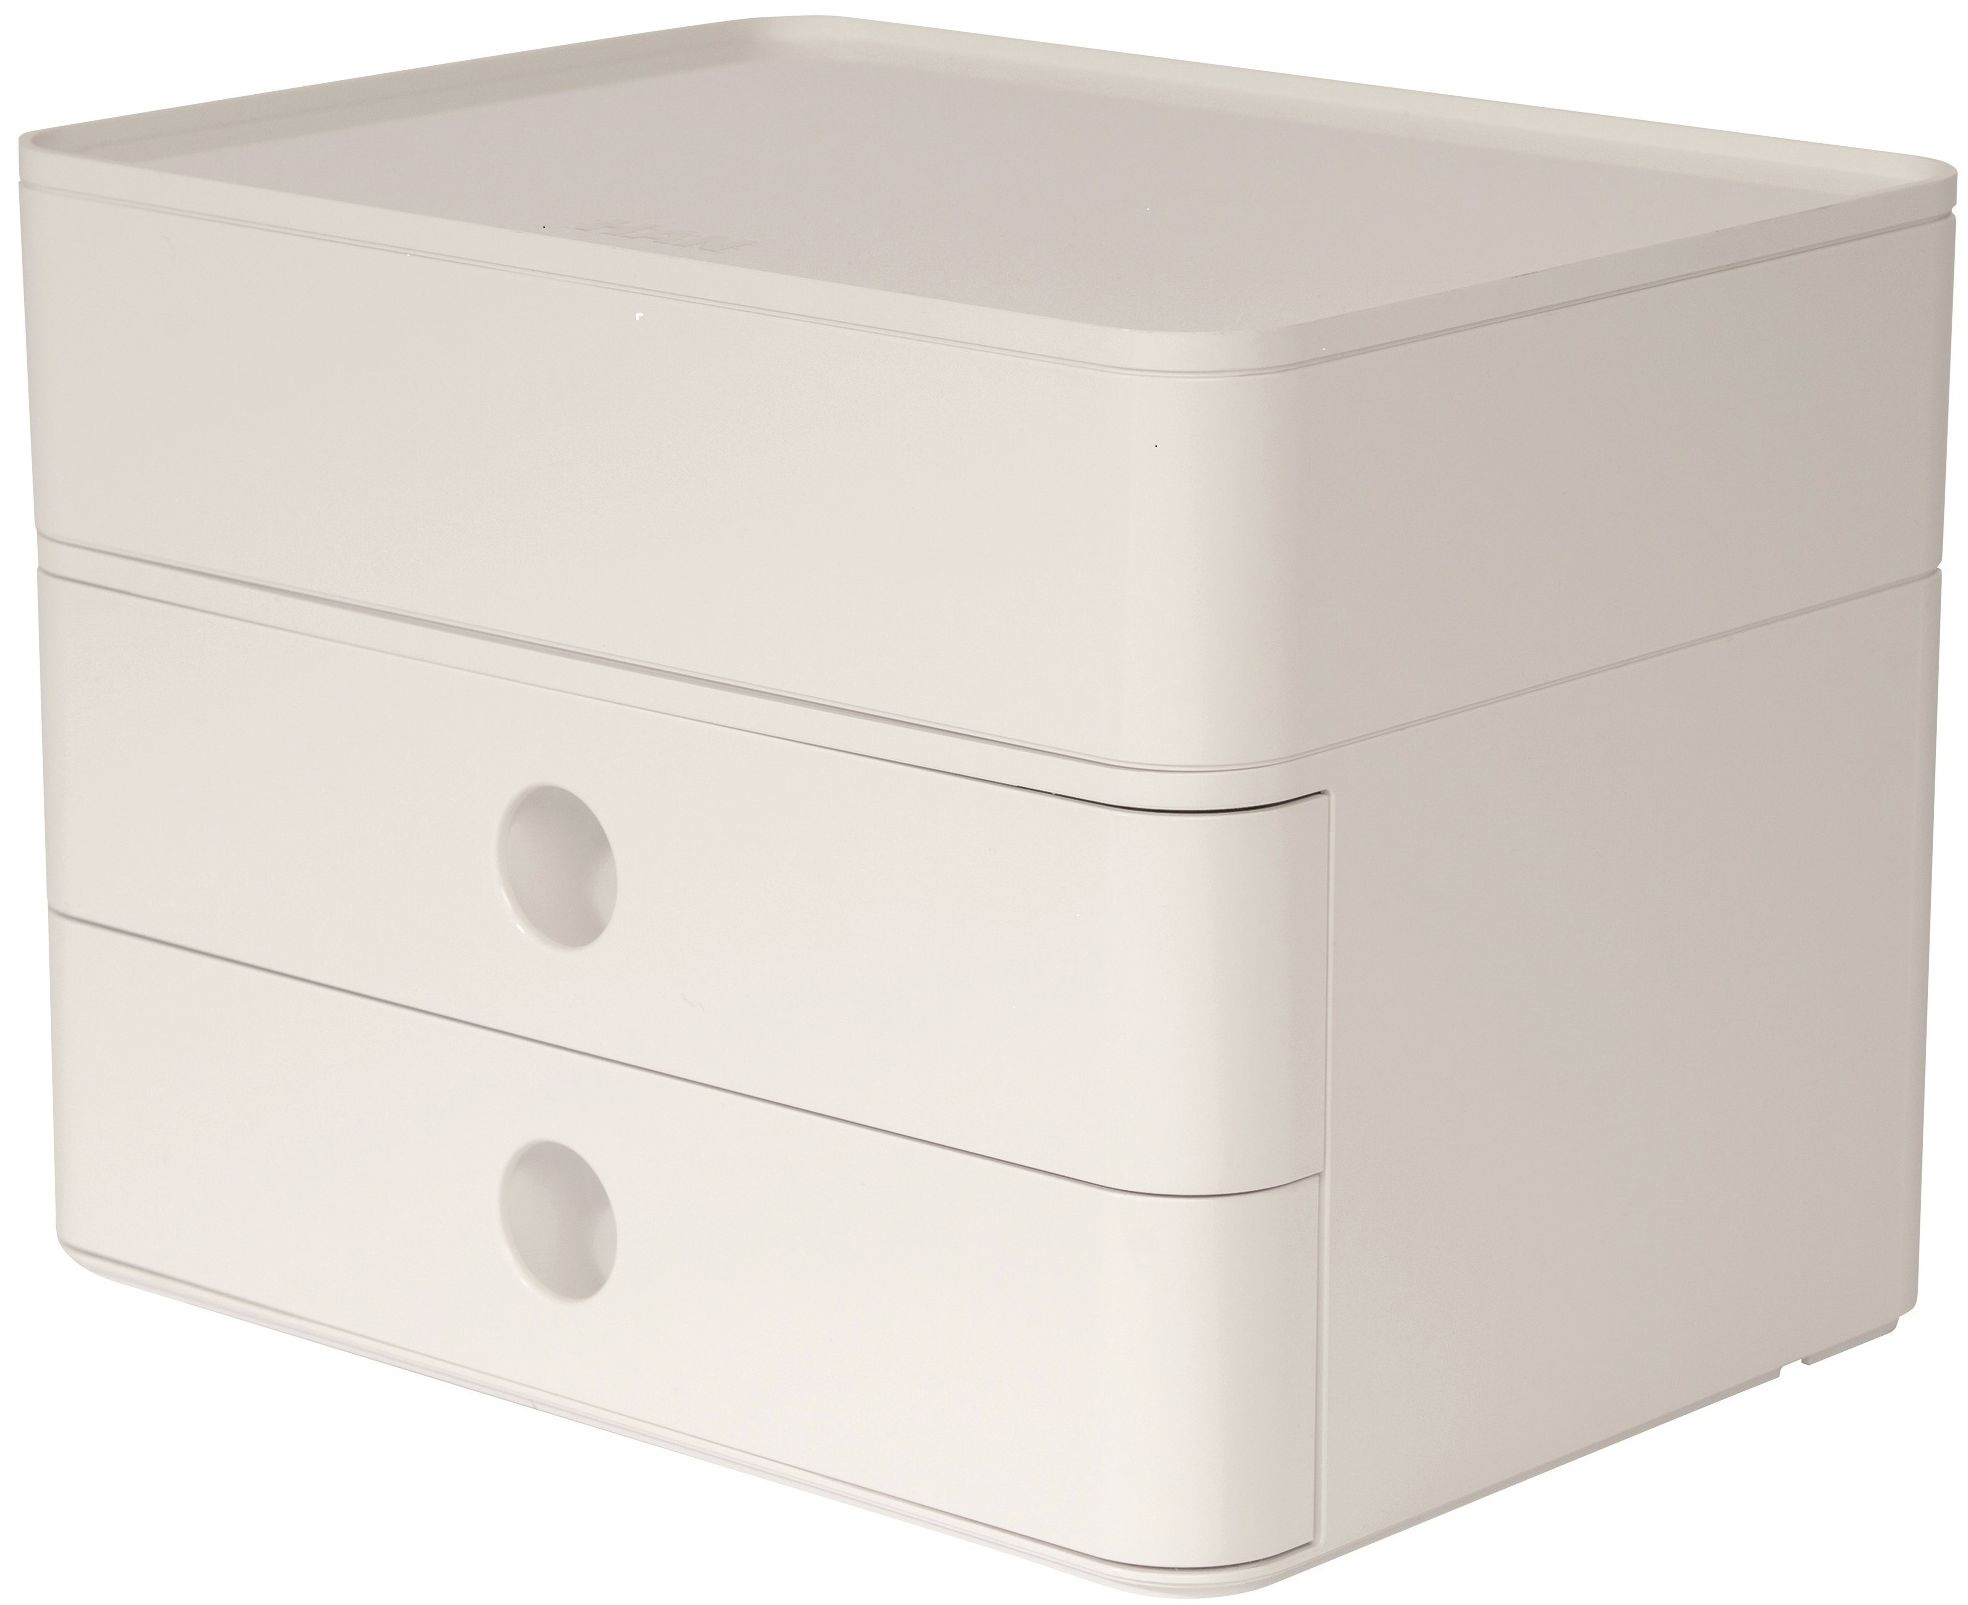 HAN Boîte à tiroirs Allison 1100-12 2 tiroirs,blanche,26x19.5x19cm